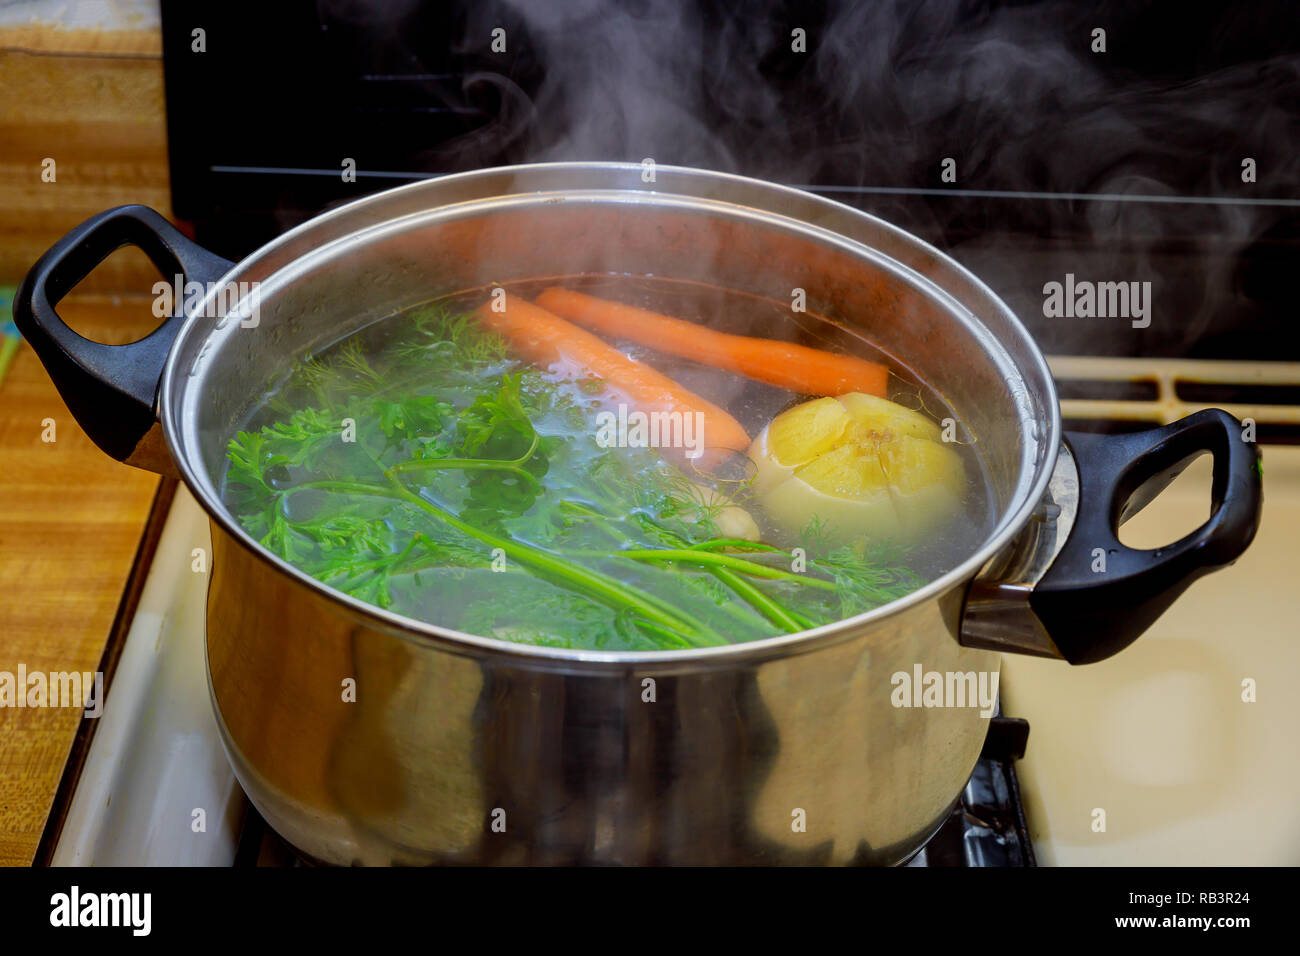 In der Nähe der Brühe in einen Topf Gemüse Zutaten für eine Suppe kochen  Essen Stockfotografie - Alamy